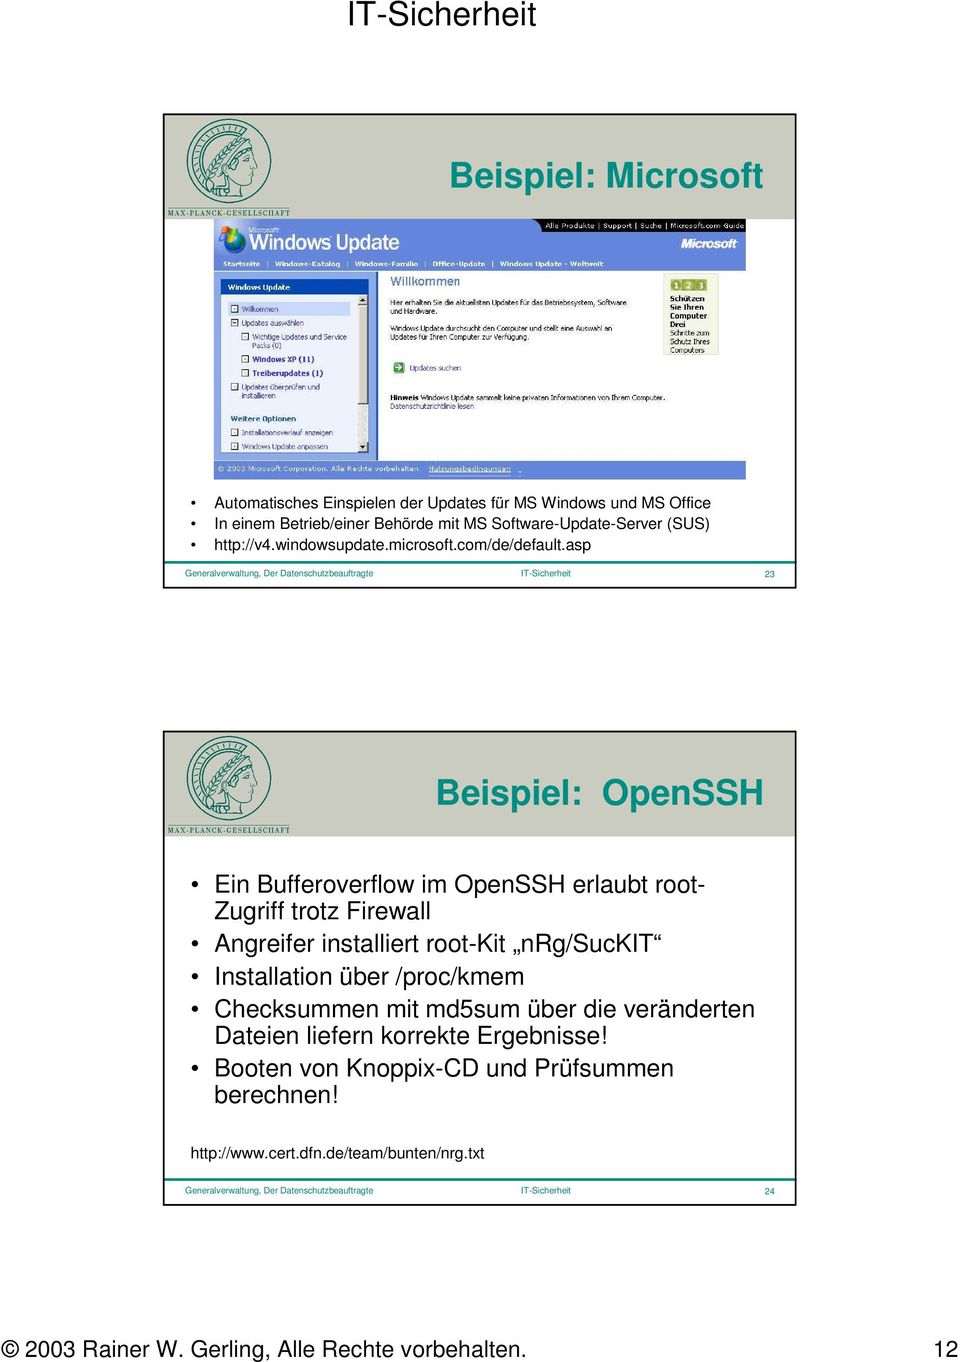 asp Generalverwaltung, Der Datenschutzbeauftragte IT-Sicherheit 23 Beispiel: OpenSSH Ein Bufferoverflow im OpenSSH erlaubt root- Zugriff trotz Firewall Angreifer installiert